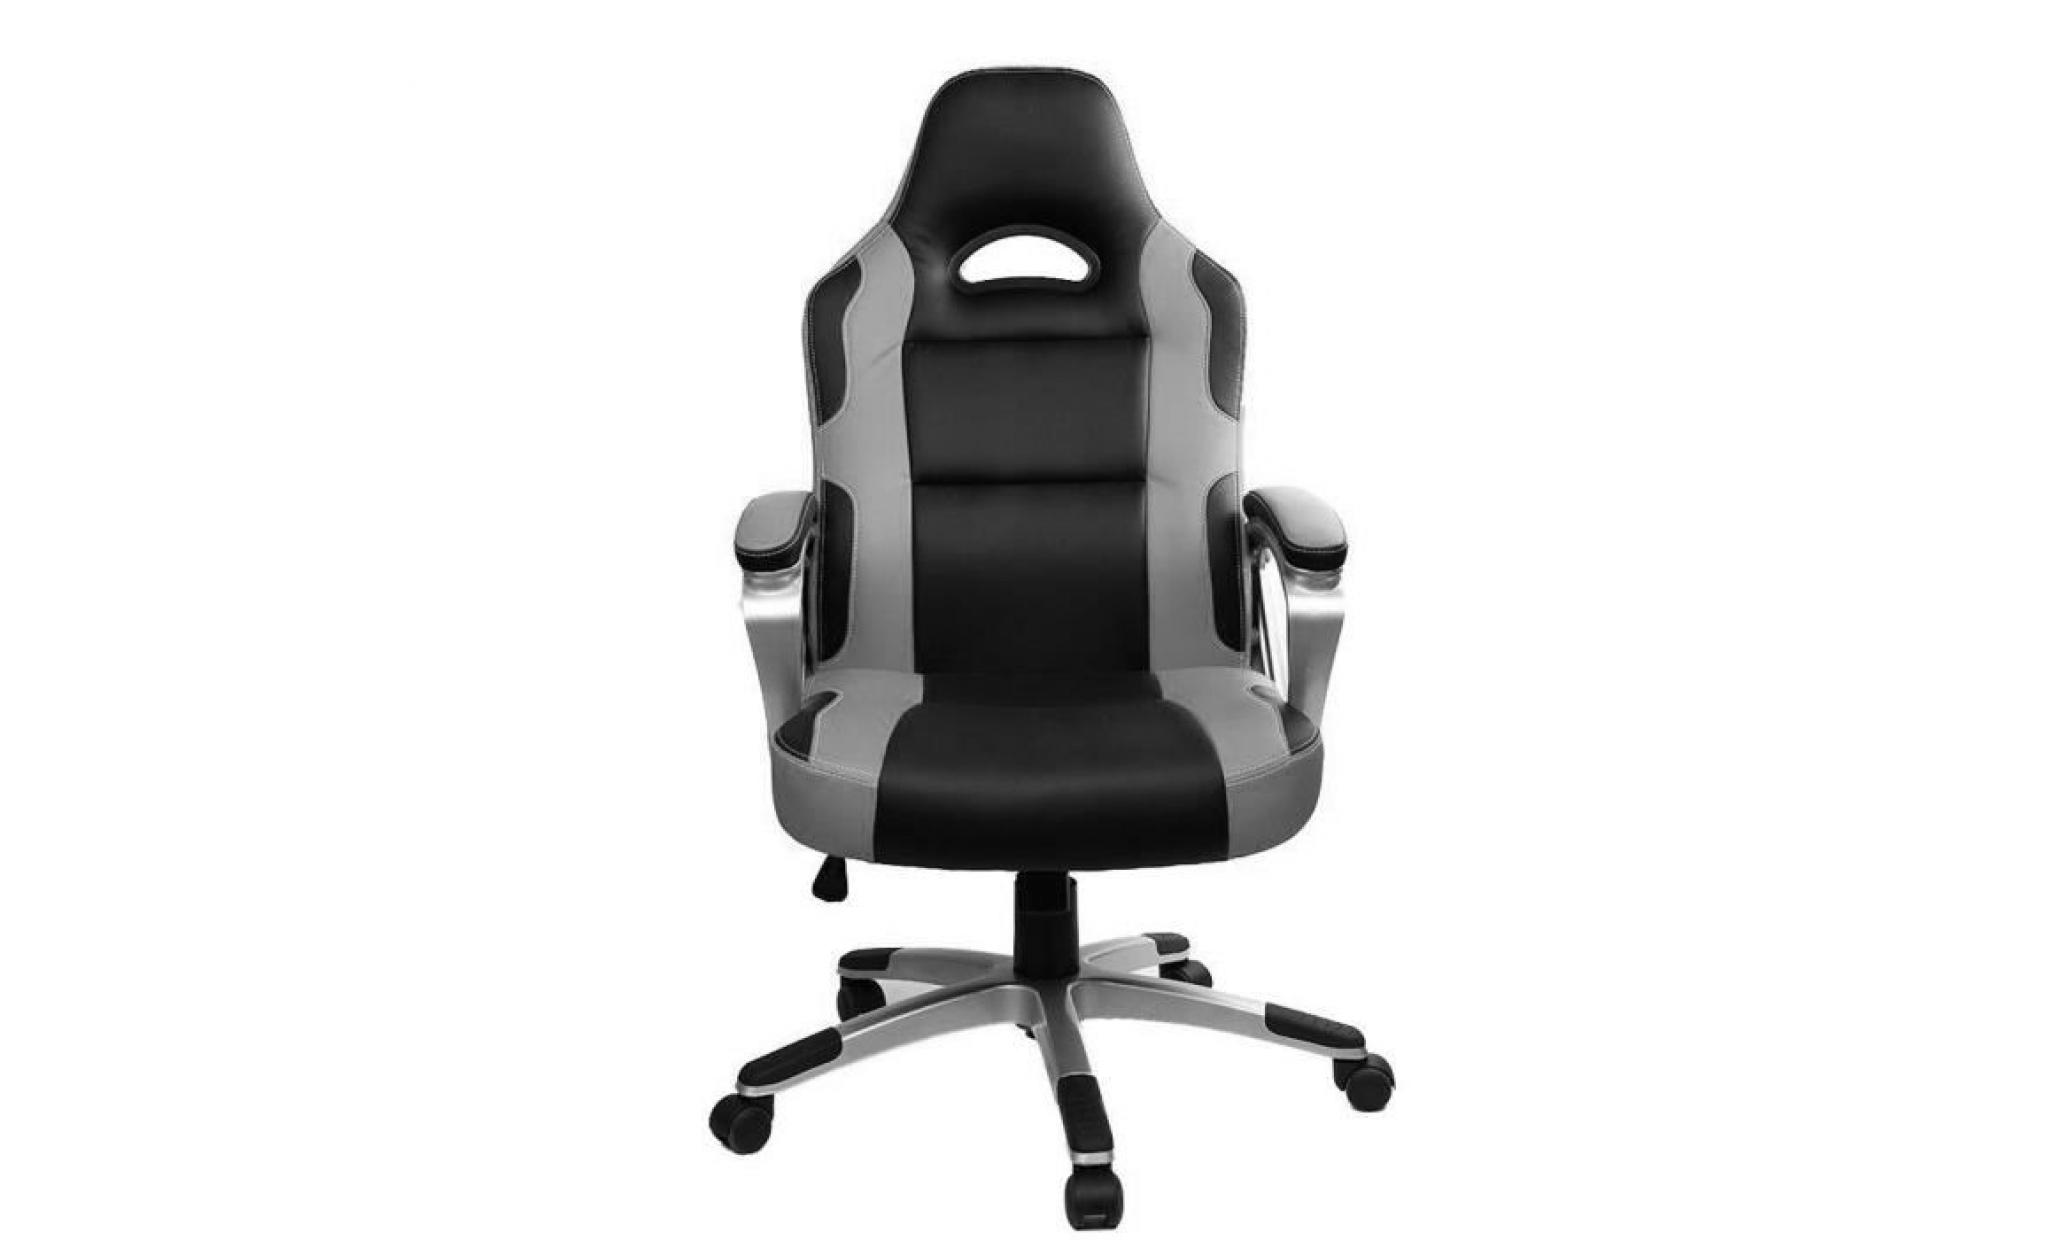 chaise gamer   racing chaise de bureau pu   gaming chaise   fauteuil de  bureau   hauteur réglable   gris / noir   intimate wm heat pas cher